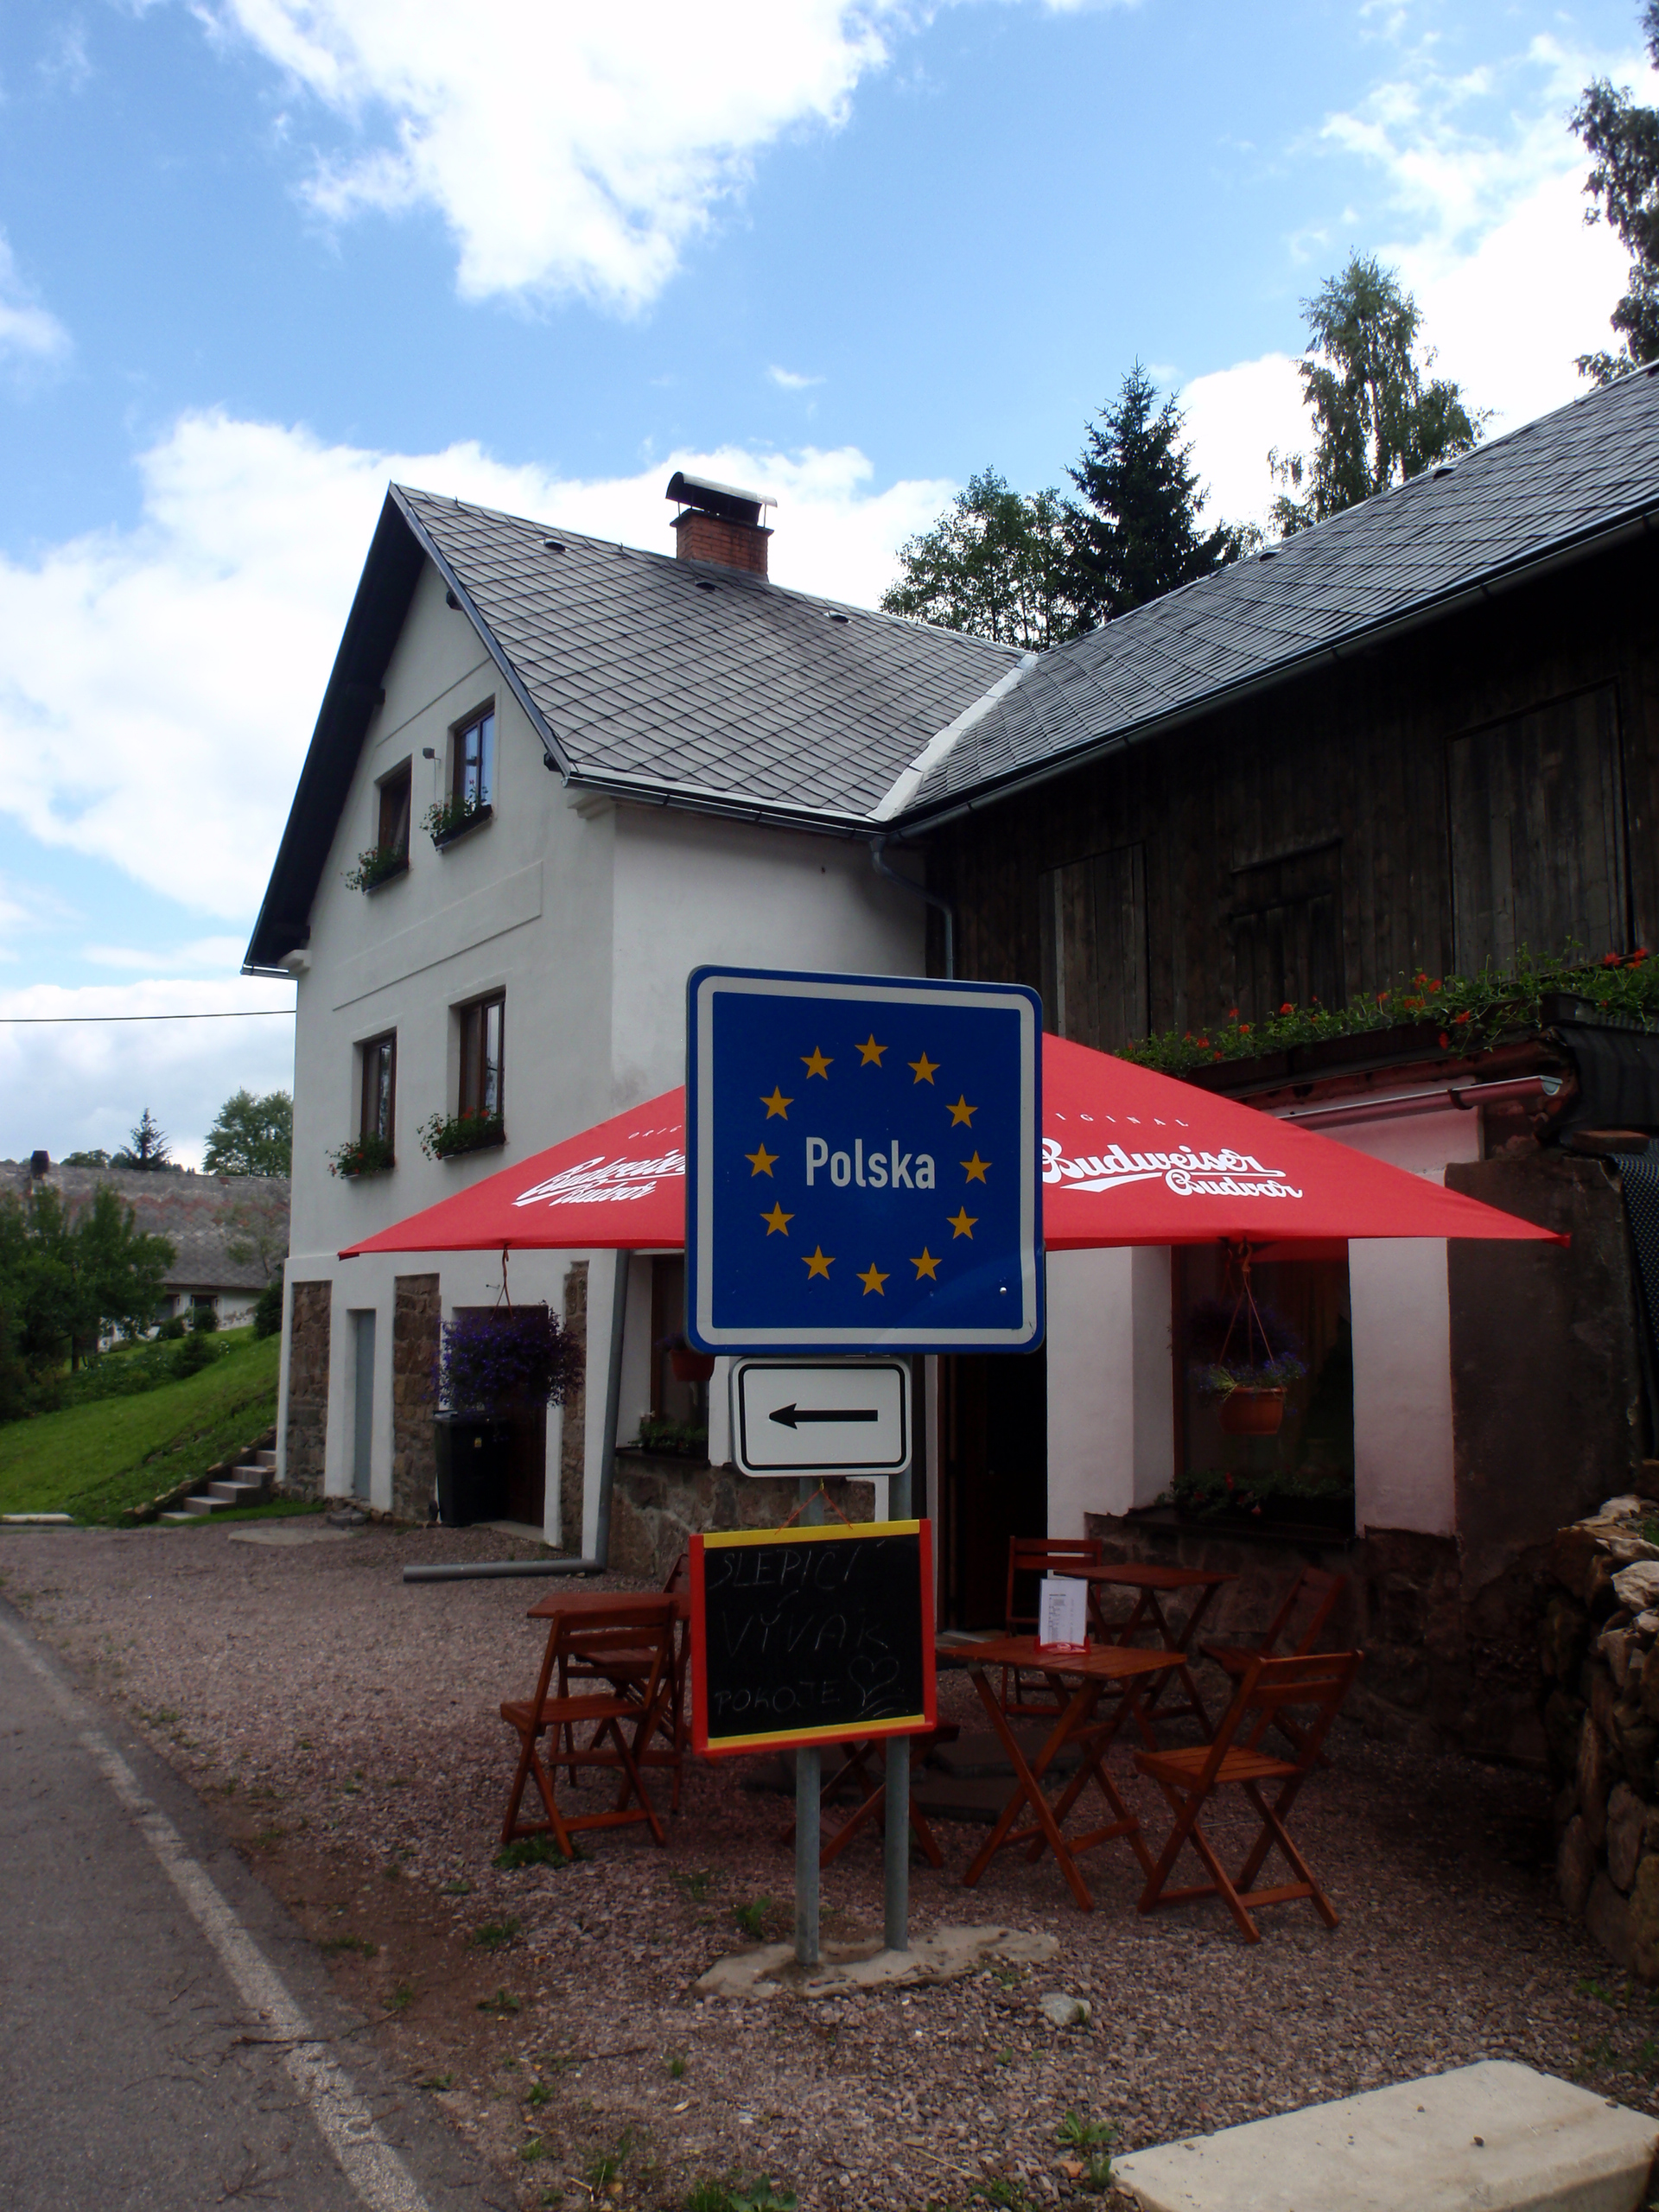 Penzion s restaurací Hruška - Orlické hory - Bartošovice v Orlických horách